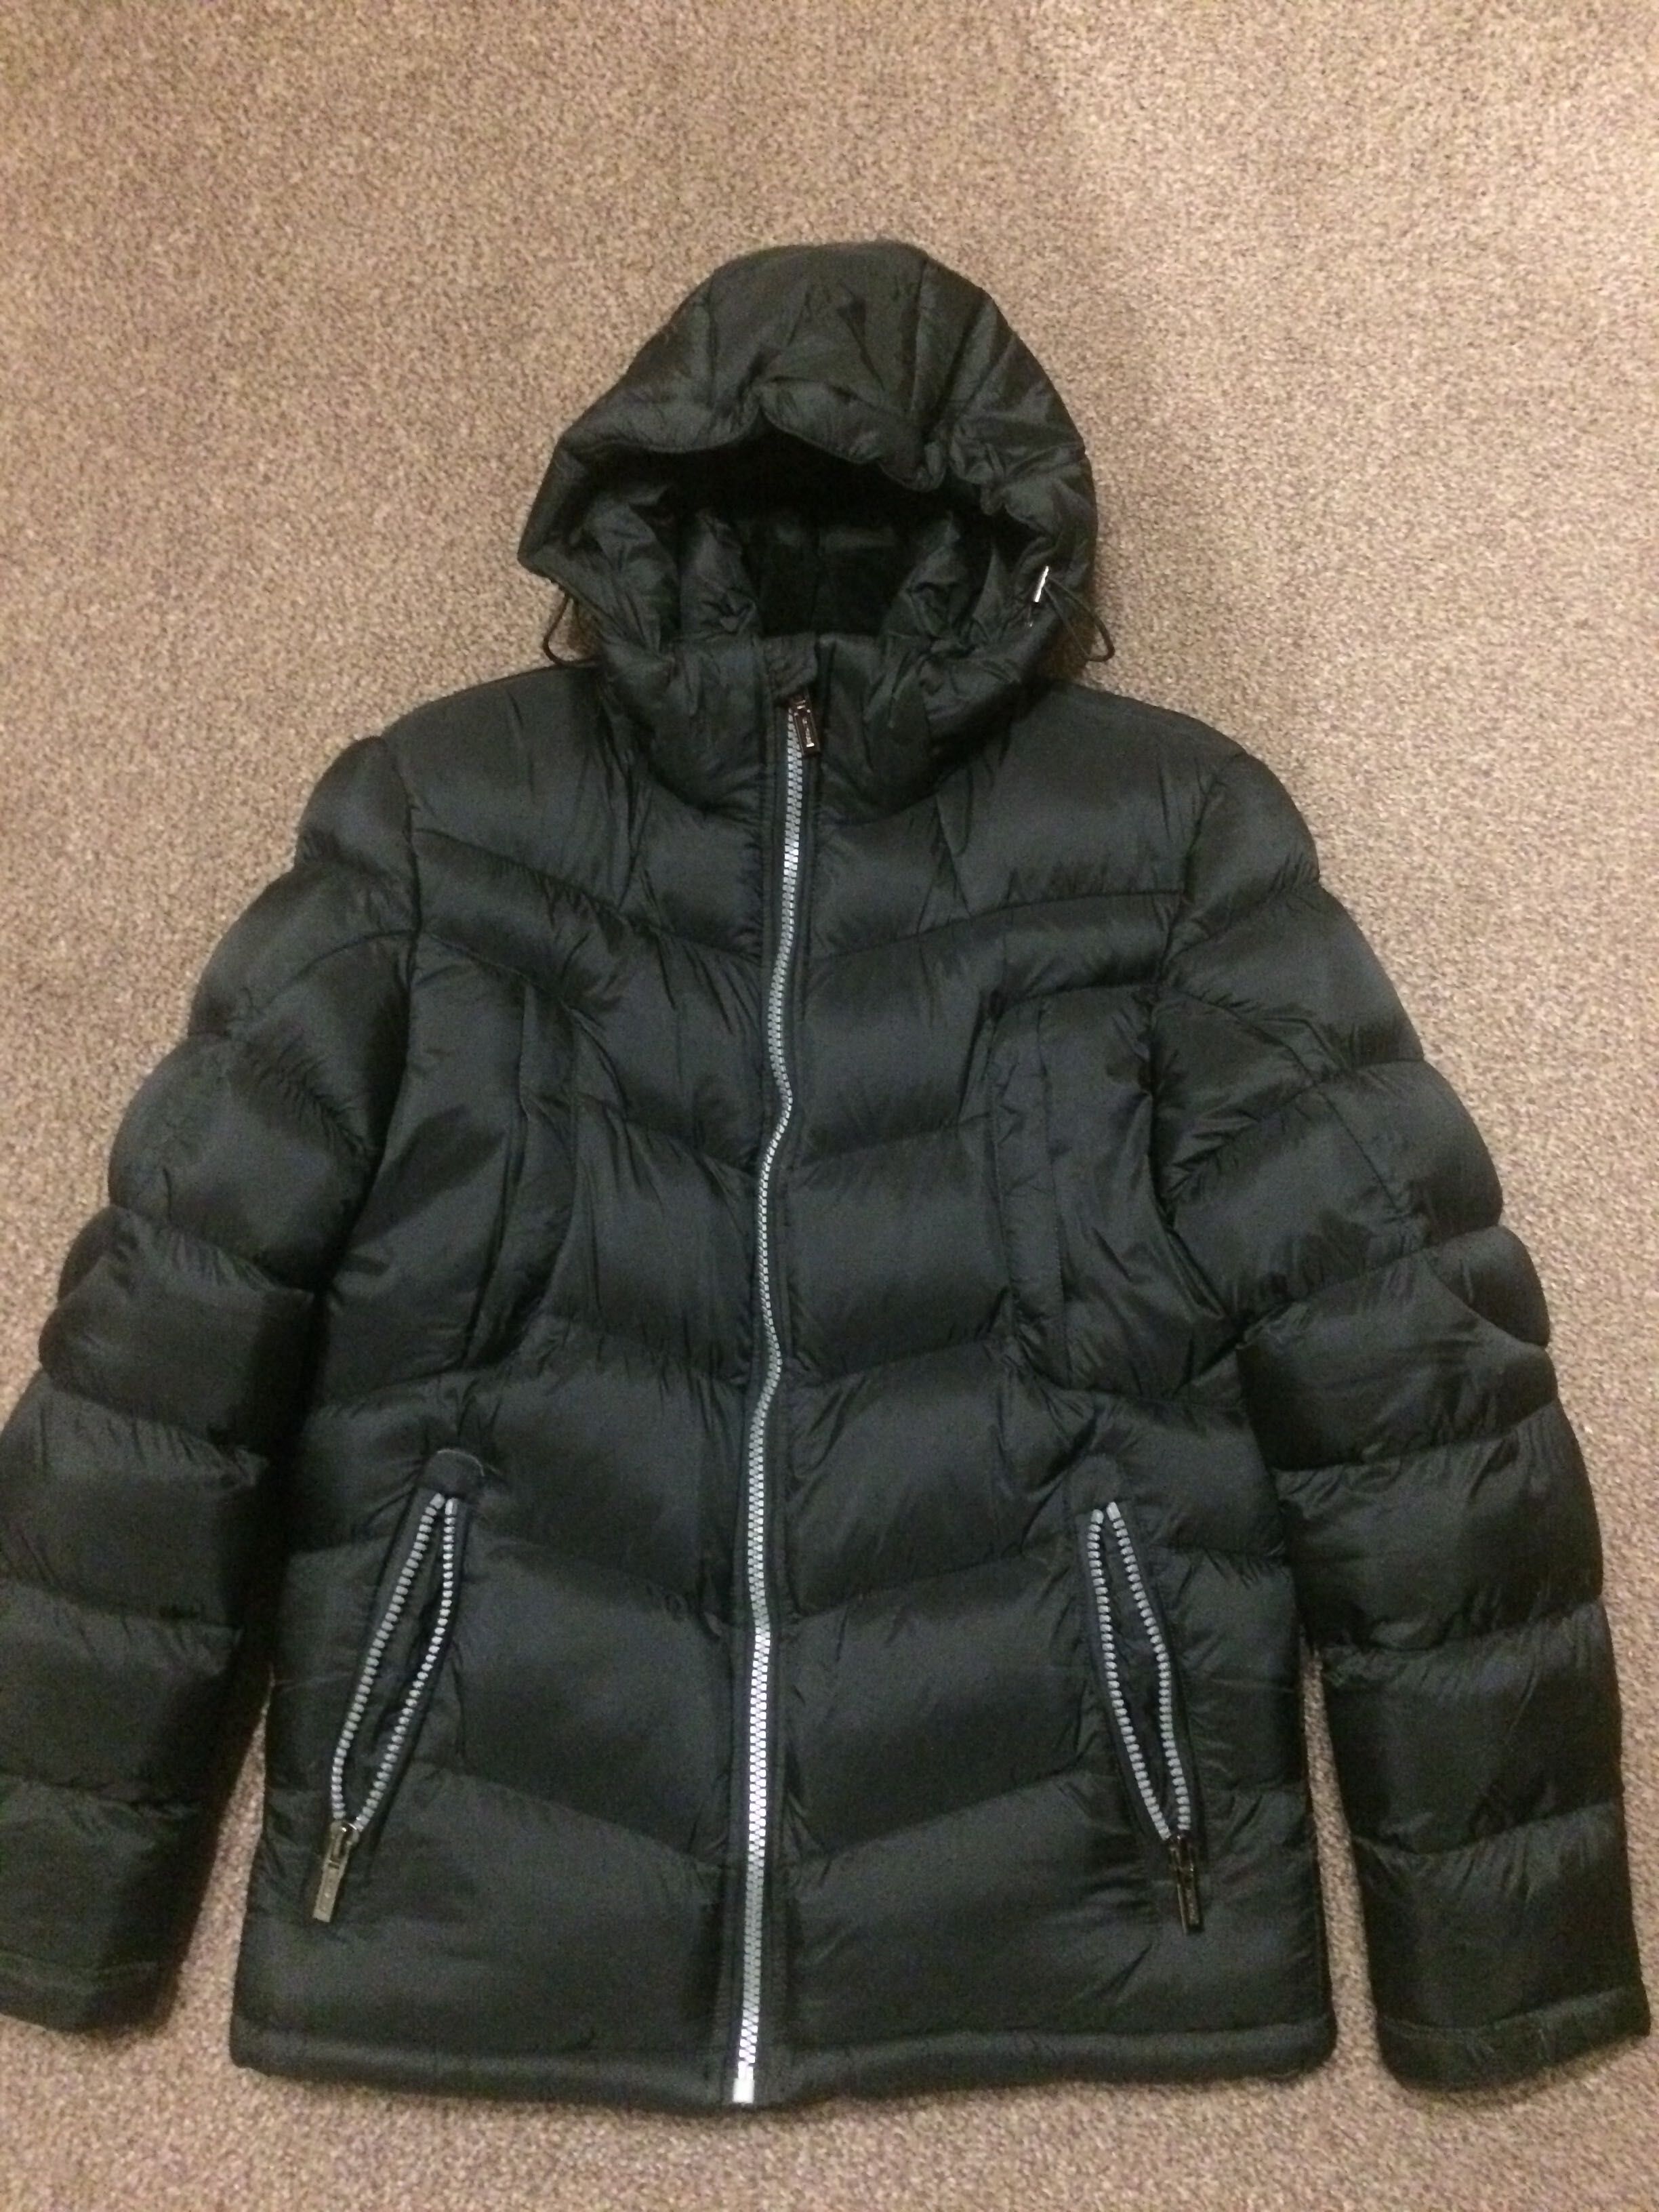 Куртка мужская зимняя куртка чоловіча зимова